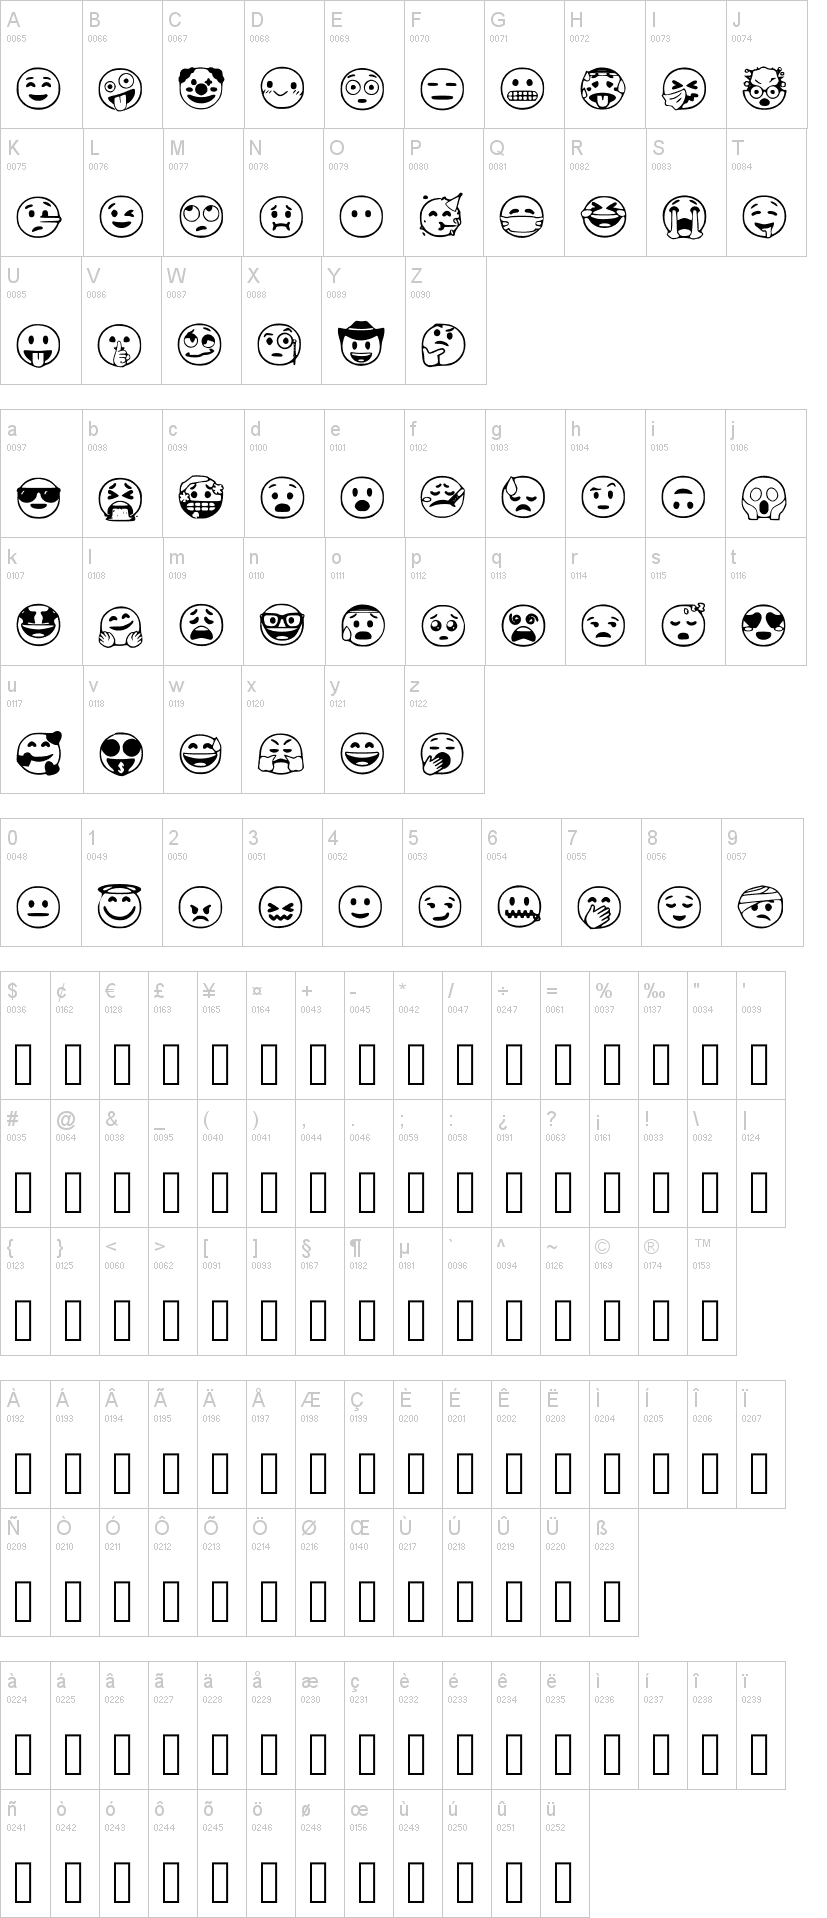 Đón chào font emoji mới nhất đến từ Apple với hàng trăm biểu tượng độc đáo và tươi sáng, làm cho cuộc trò chuyện của bạn trở nên thú vị hơn bao giờ hết. Tải xuống ngay để trải nghiệm trên tất cả các thiết bị của mình.